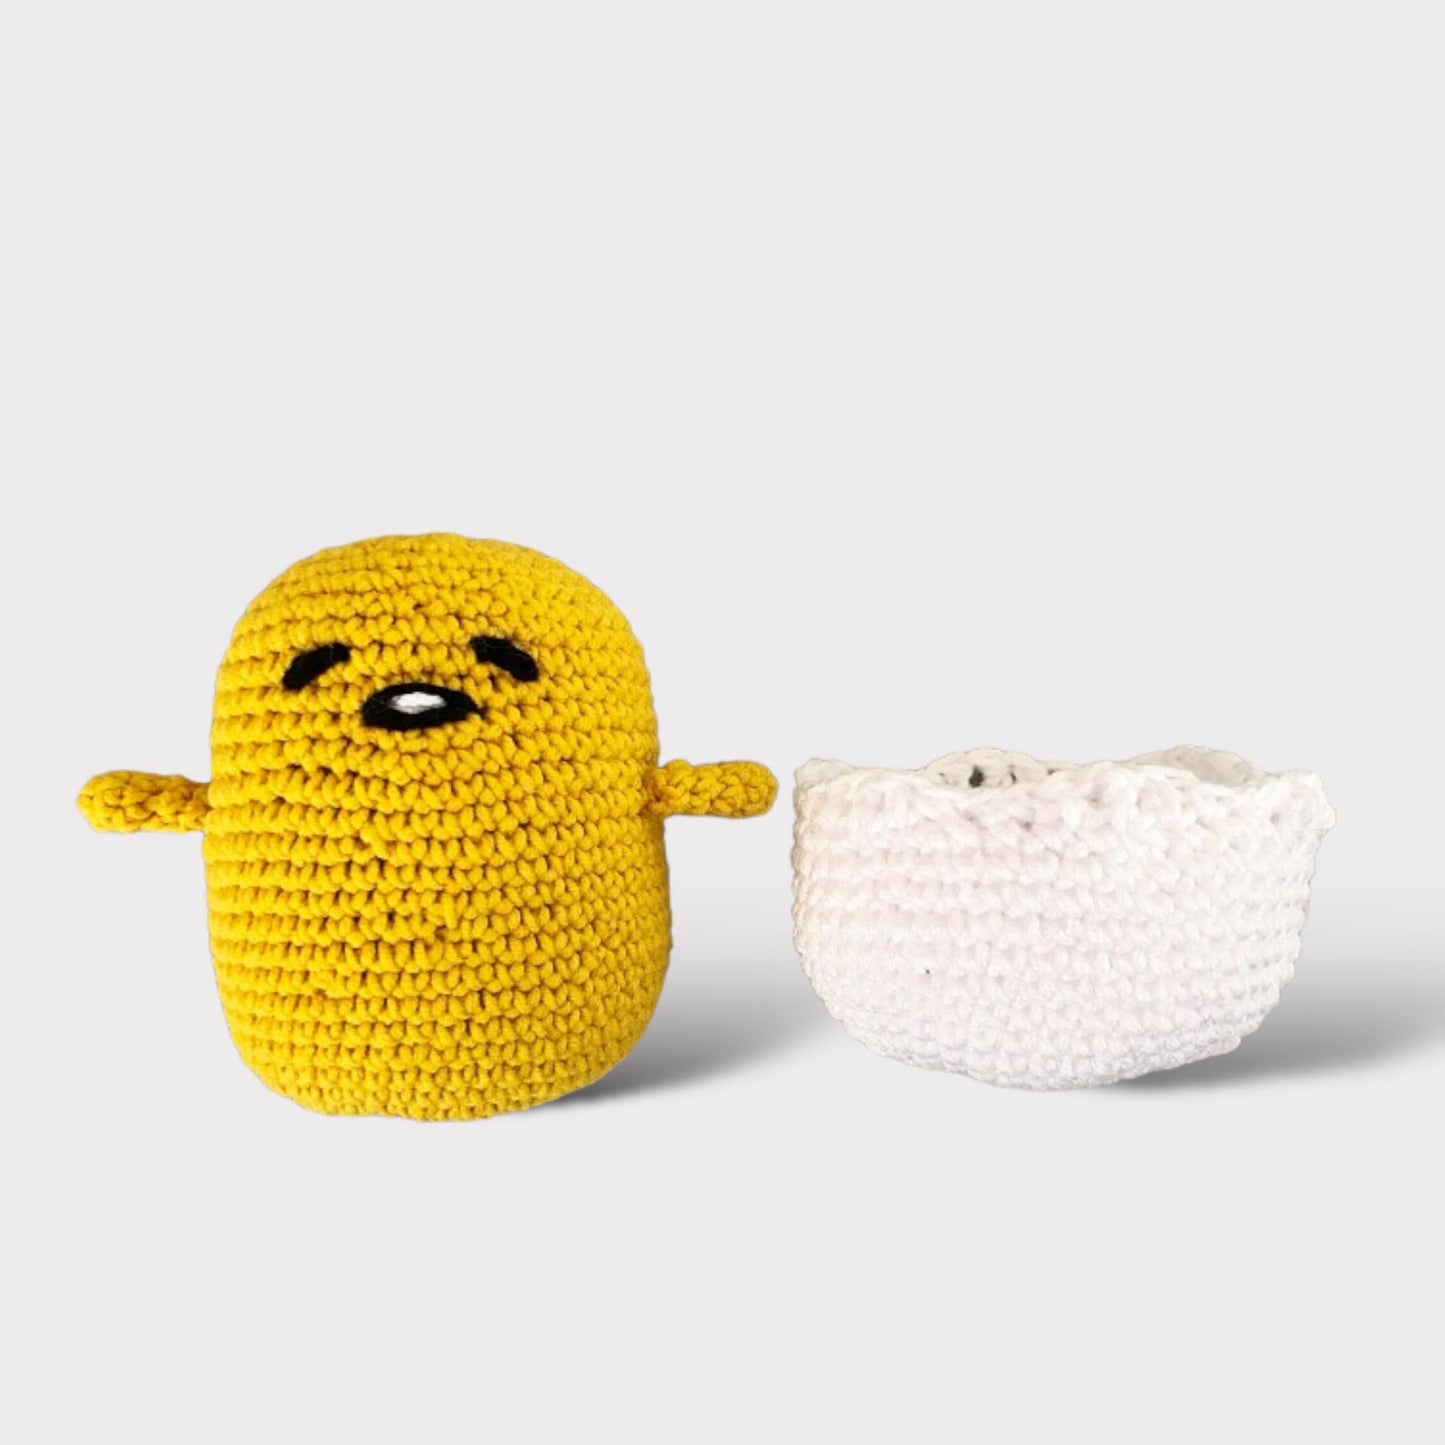 PATTERN: crochet egg